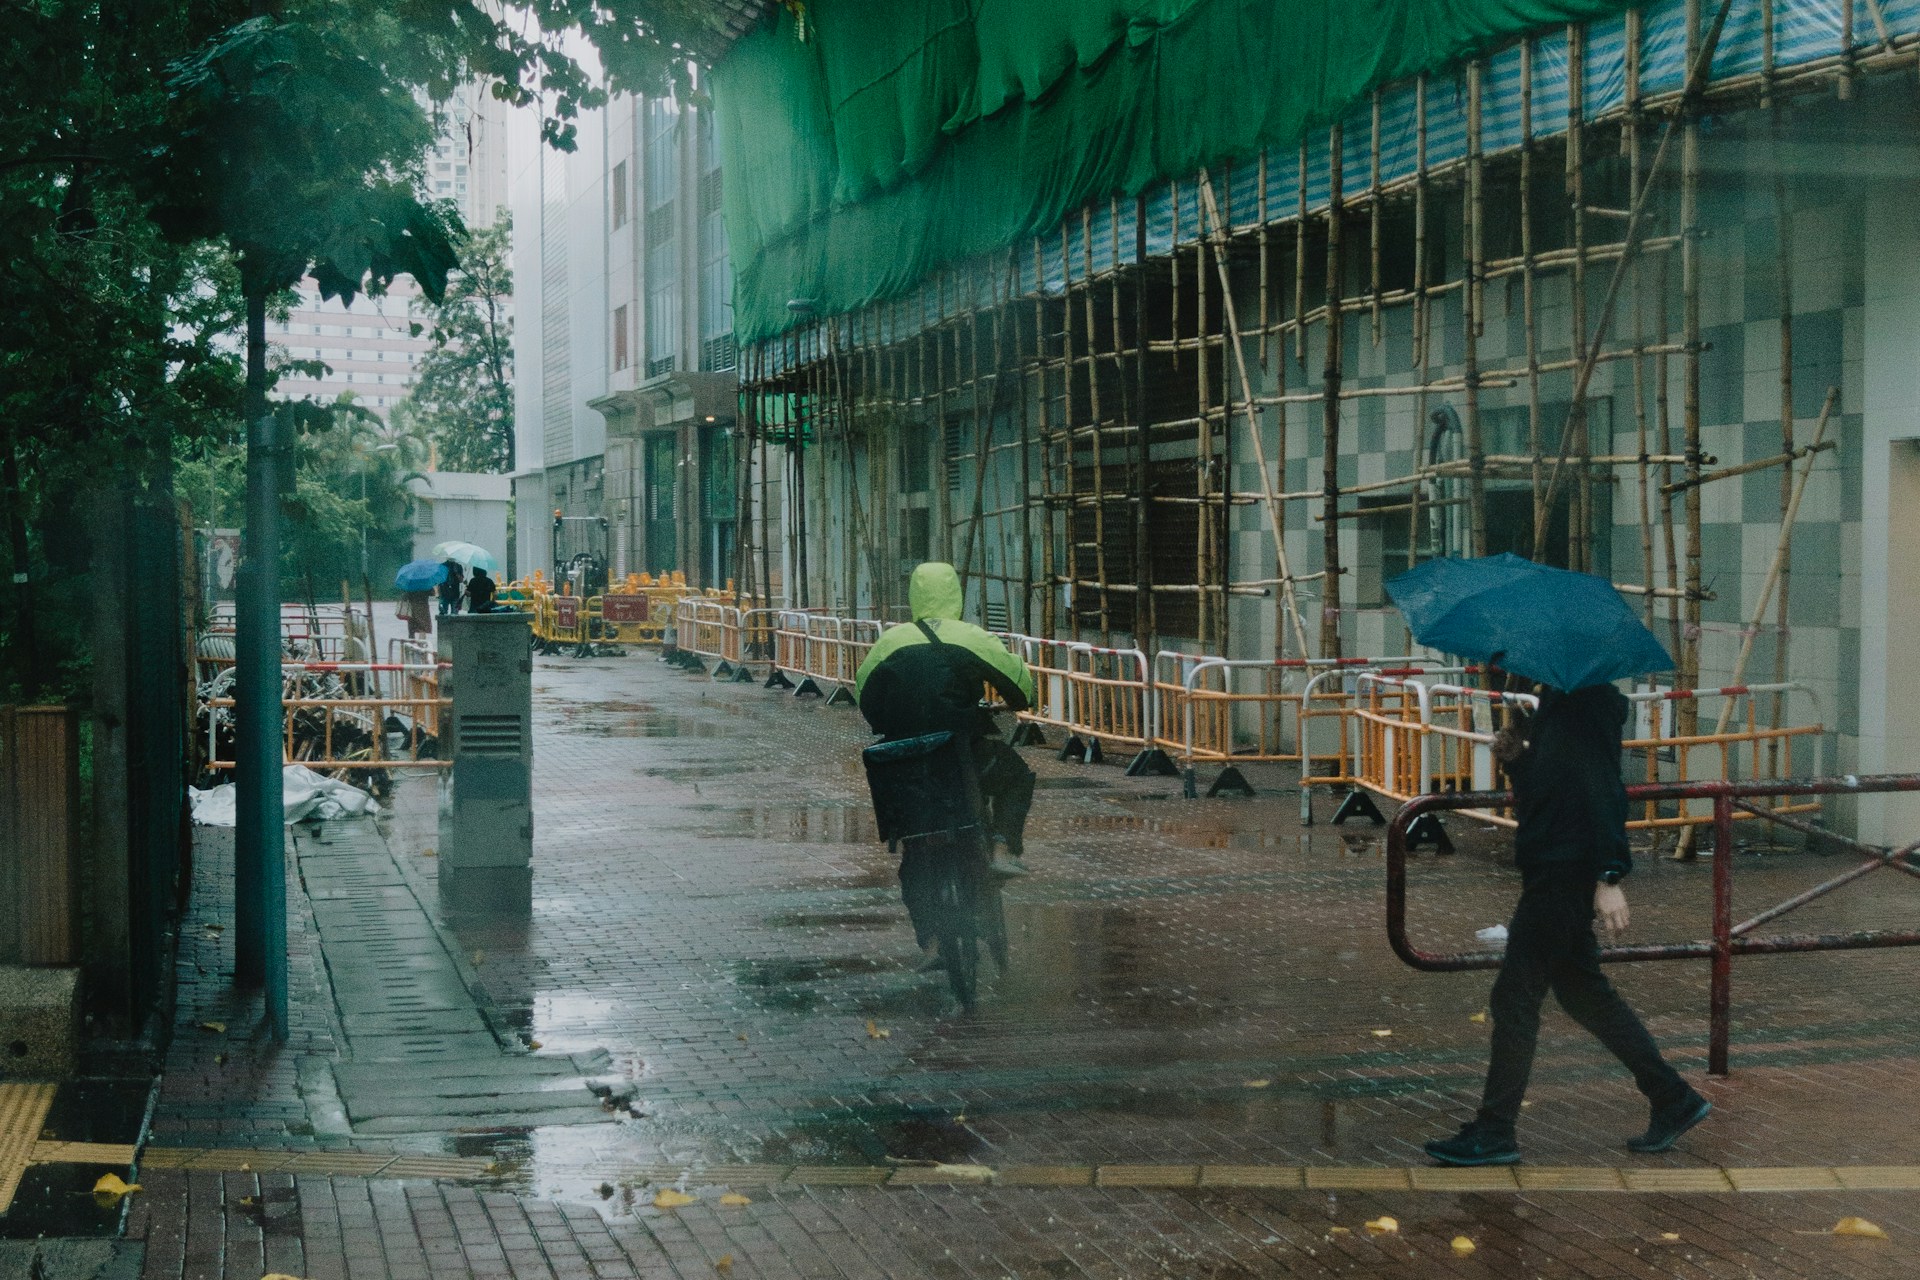 Bici elettrica con la pioggia